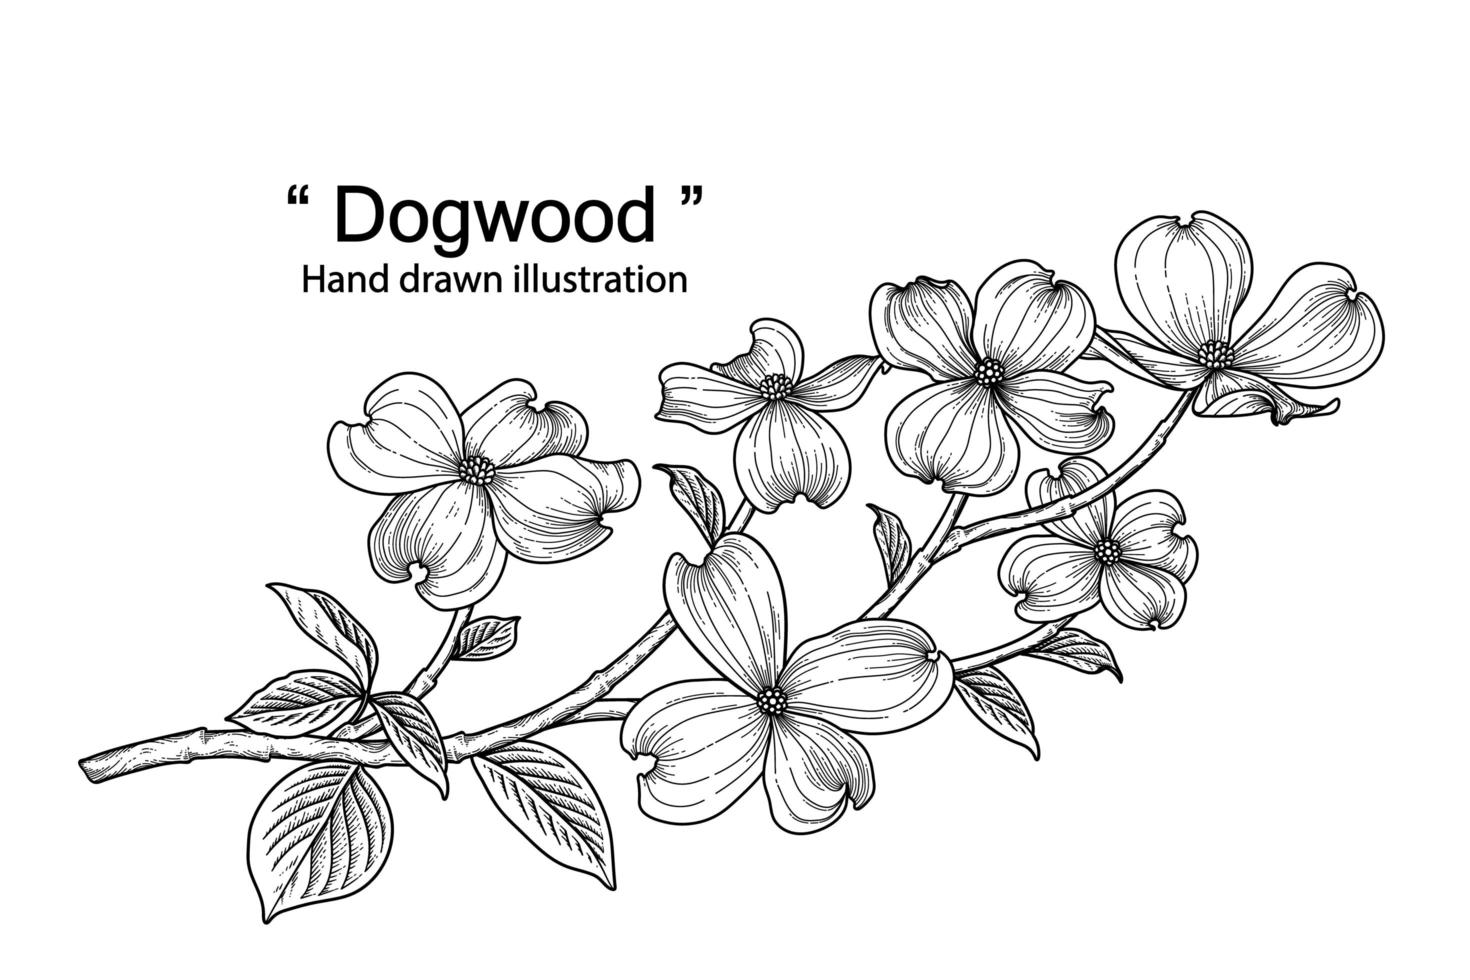 branche de cornouiller avec fleur et feuilles illustrations botaniques croquis dessinés à la main vecteur